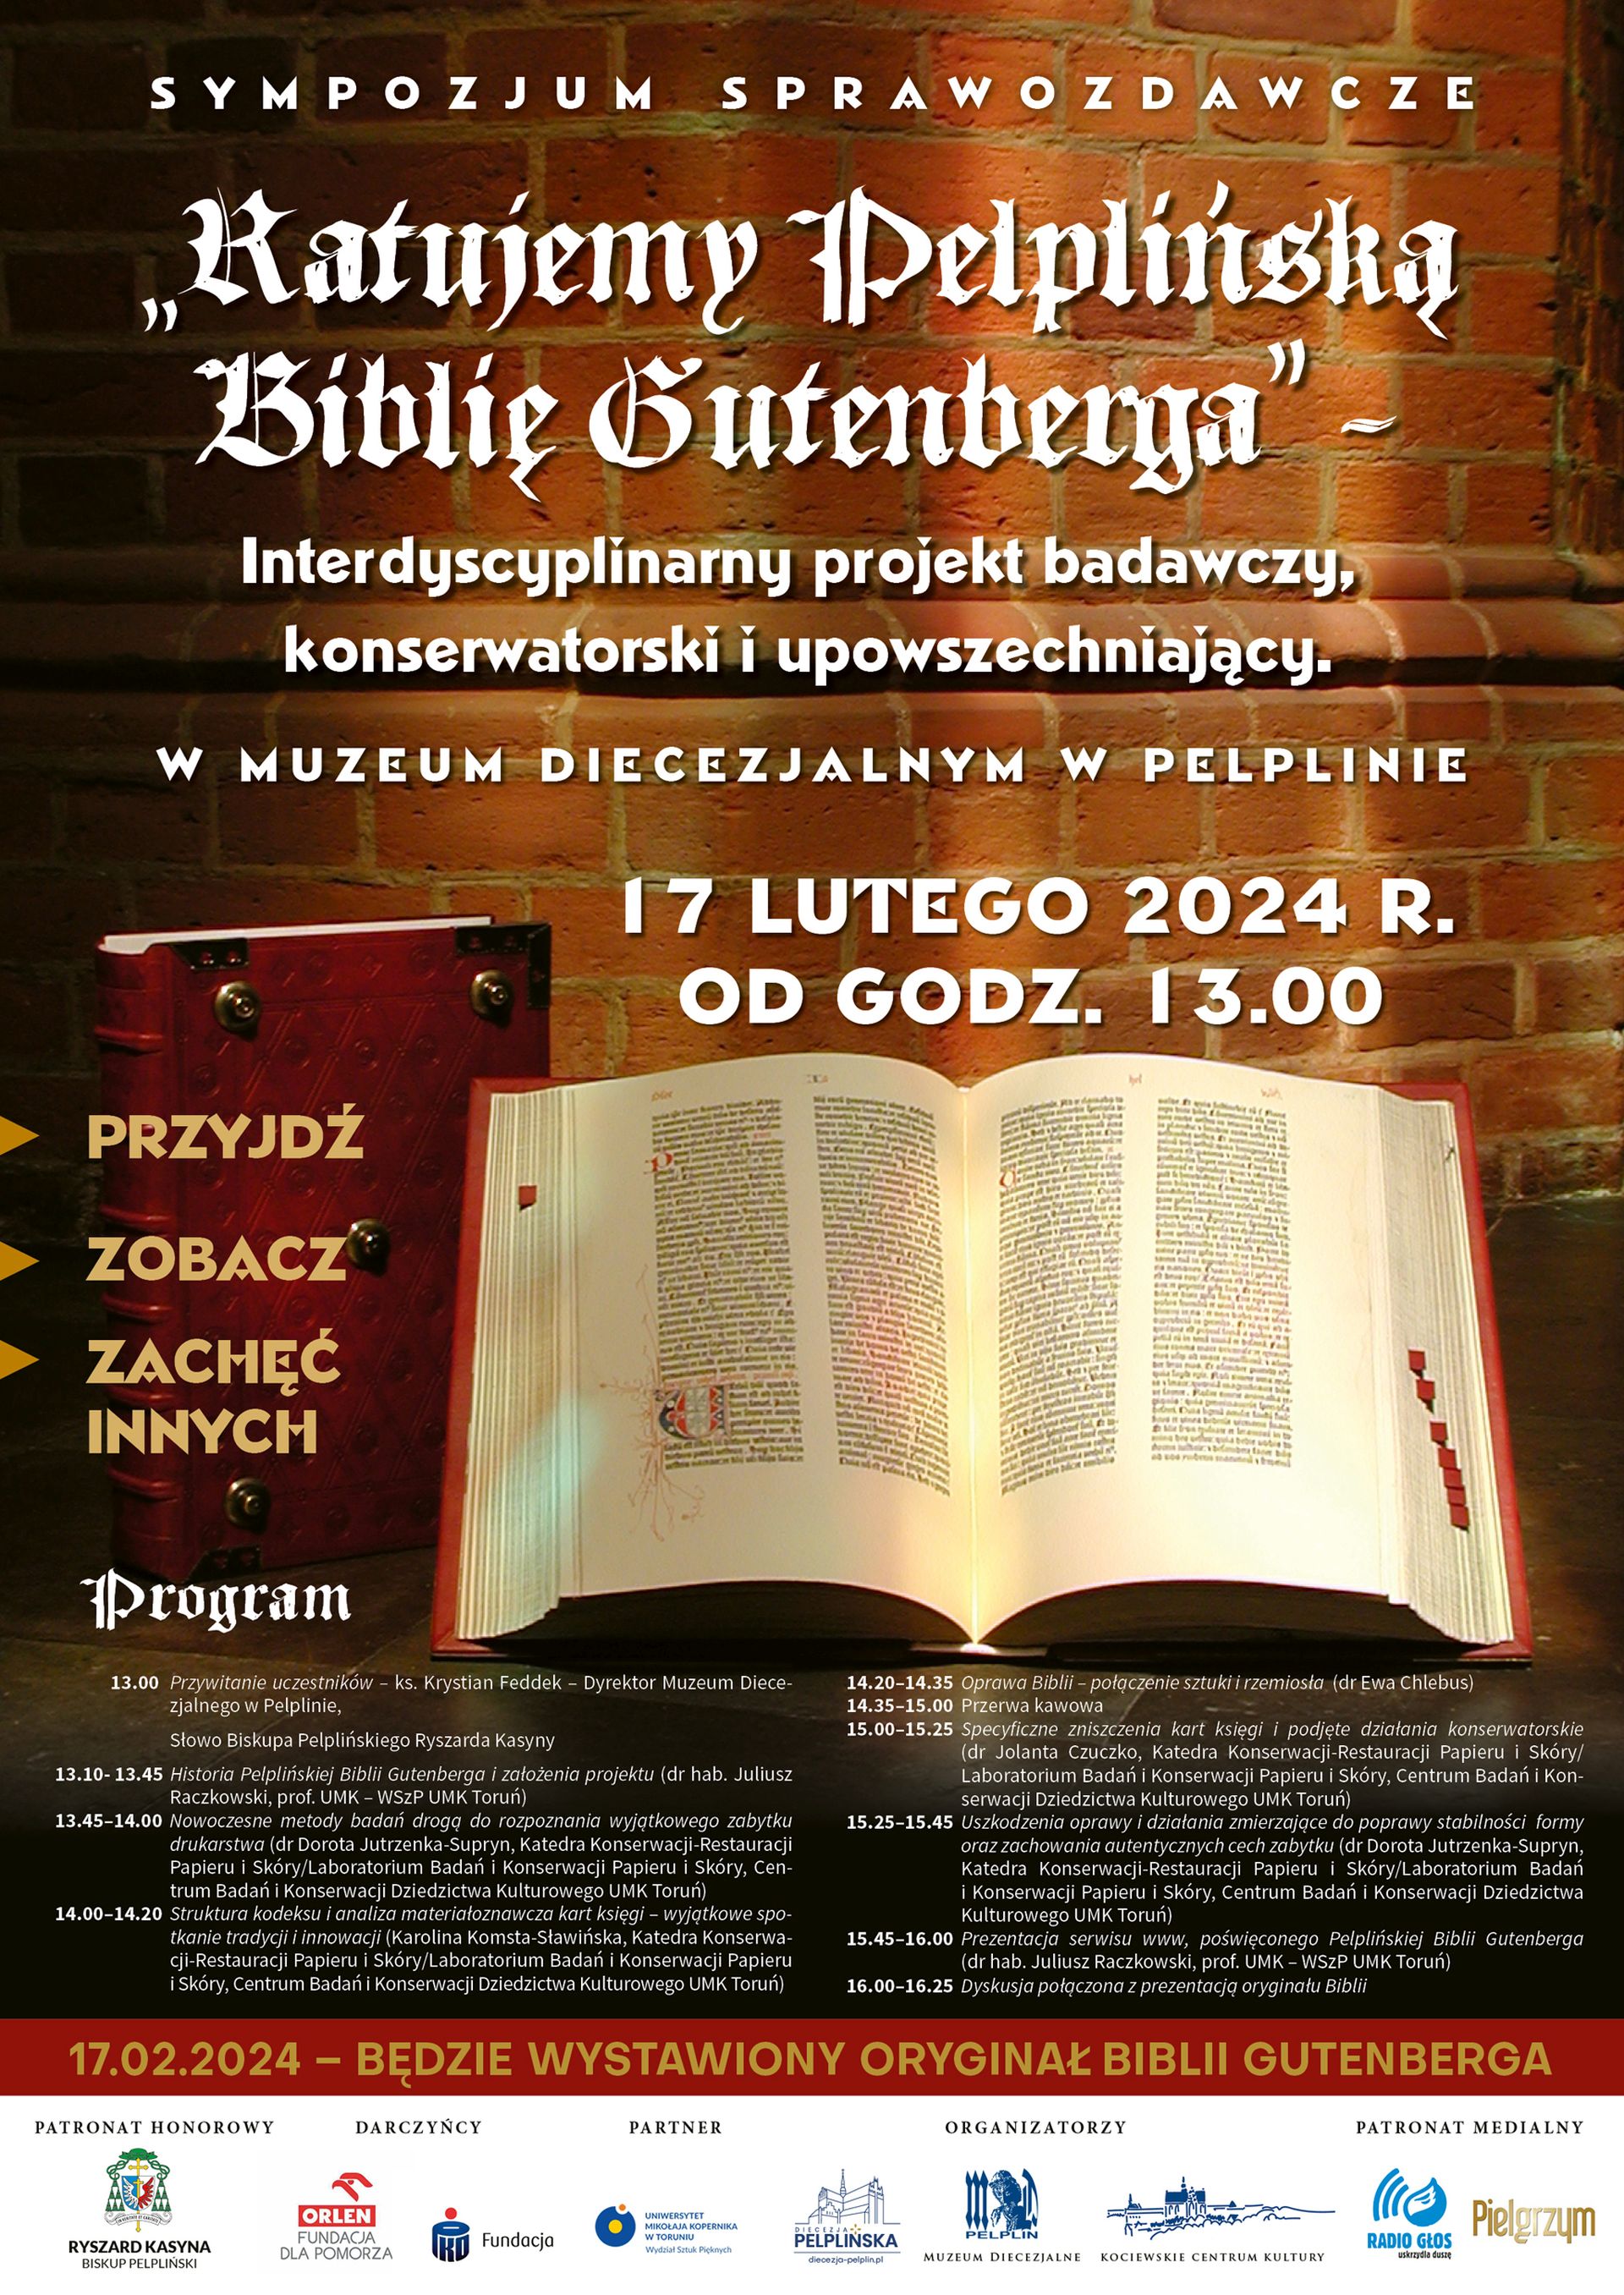 Plakat przedstawia informacje o Sympozjum sprawozdawczym "Ratujemy Pelplińską Biblię Gutenberga" - Interdyscyplinarnym projekcie badawczym, konserwatorskim i upowszechniającym. W Muzeum Diecezjalnym w Pelplinie w dniu 17.02.2024 roku o godzinie 13.00.